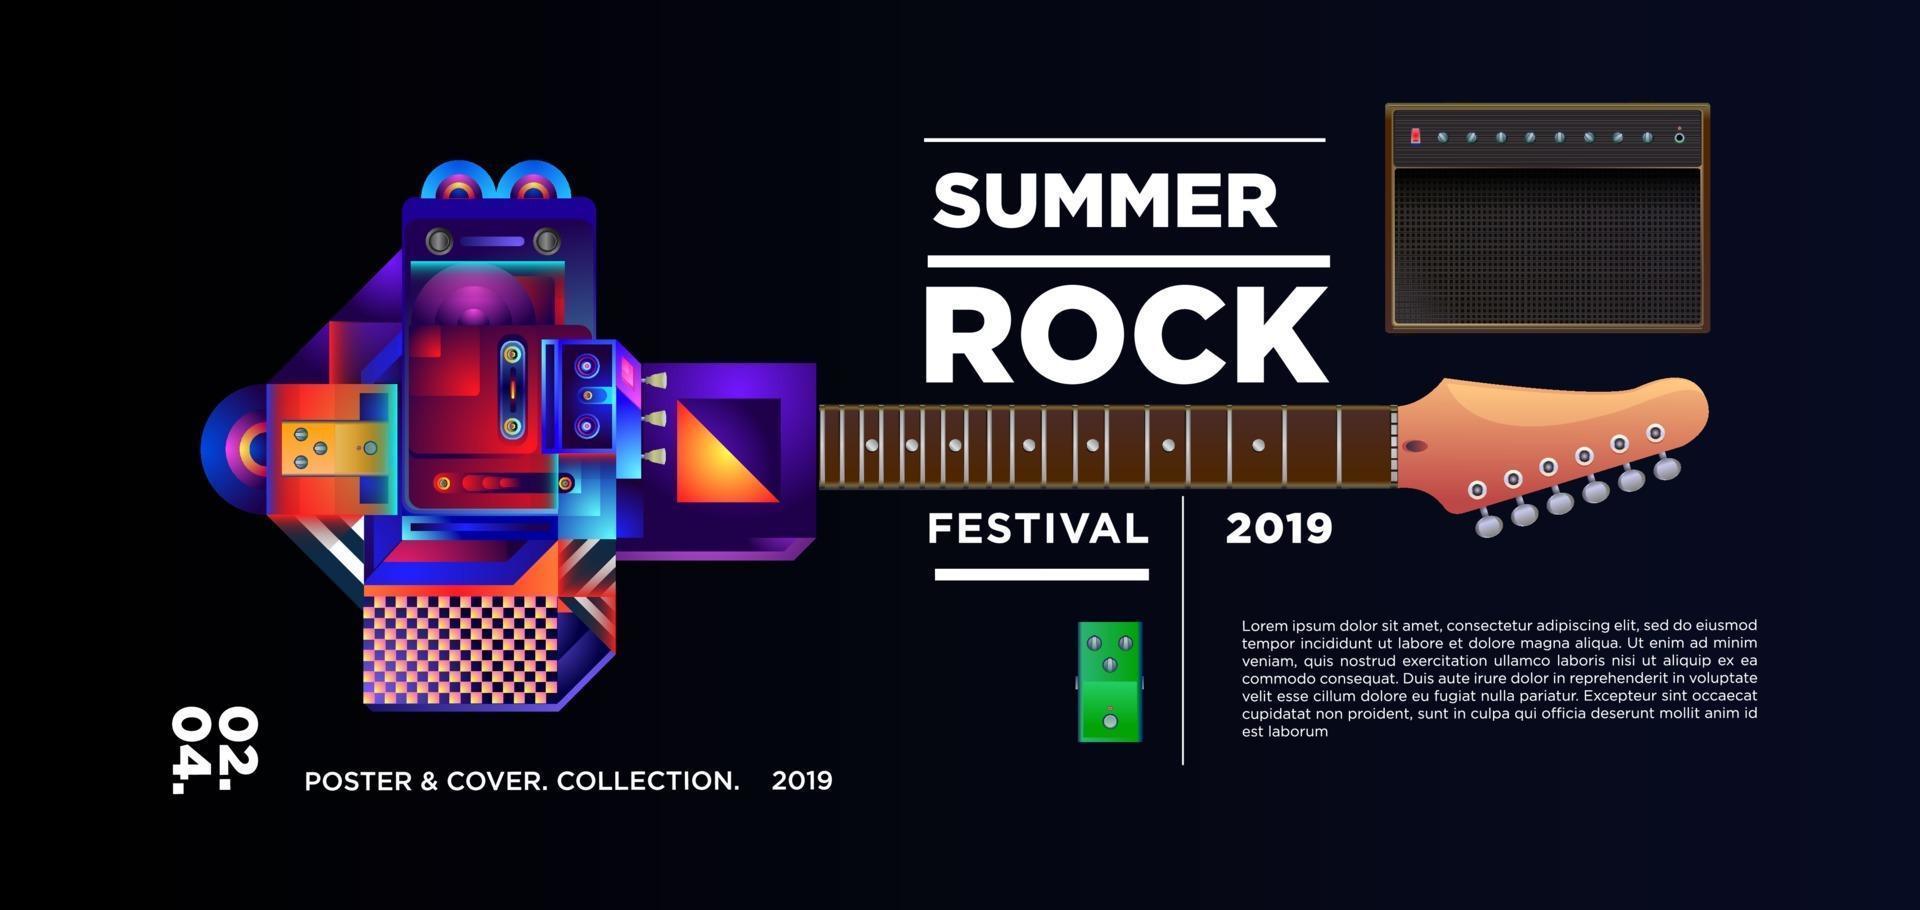 banner festival de música rock de verão vetor